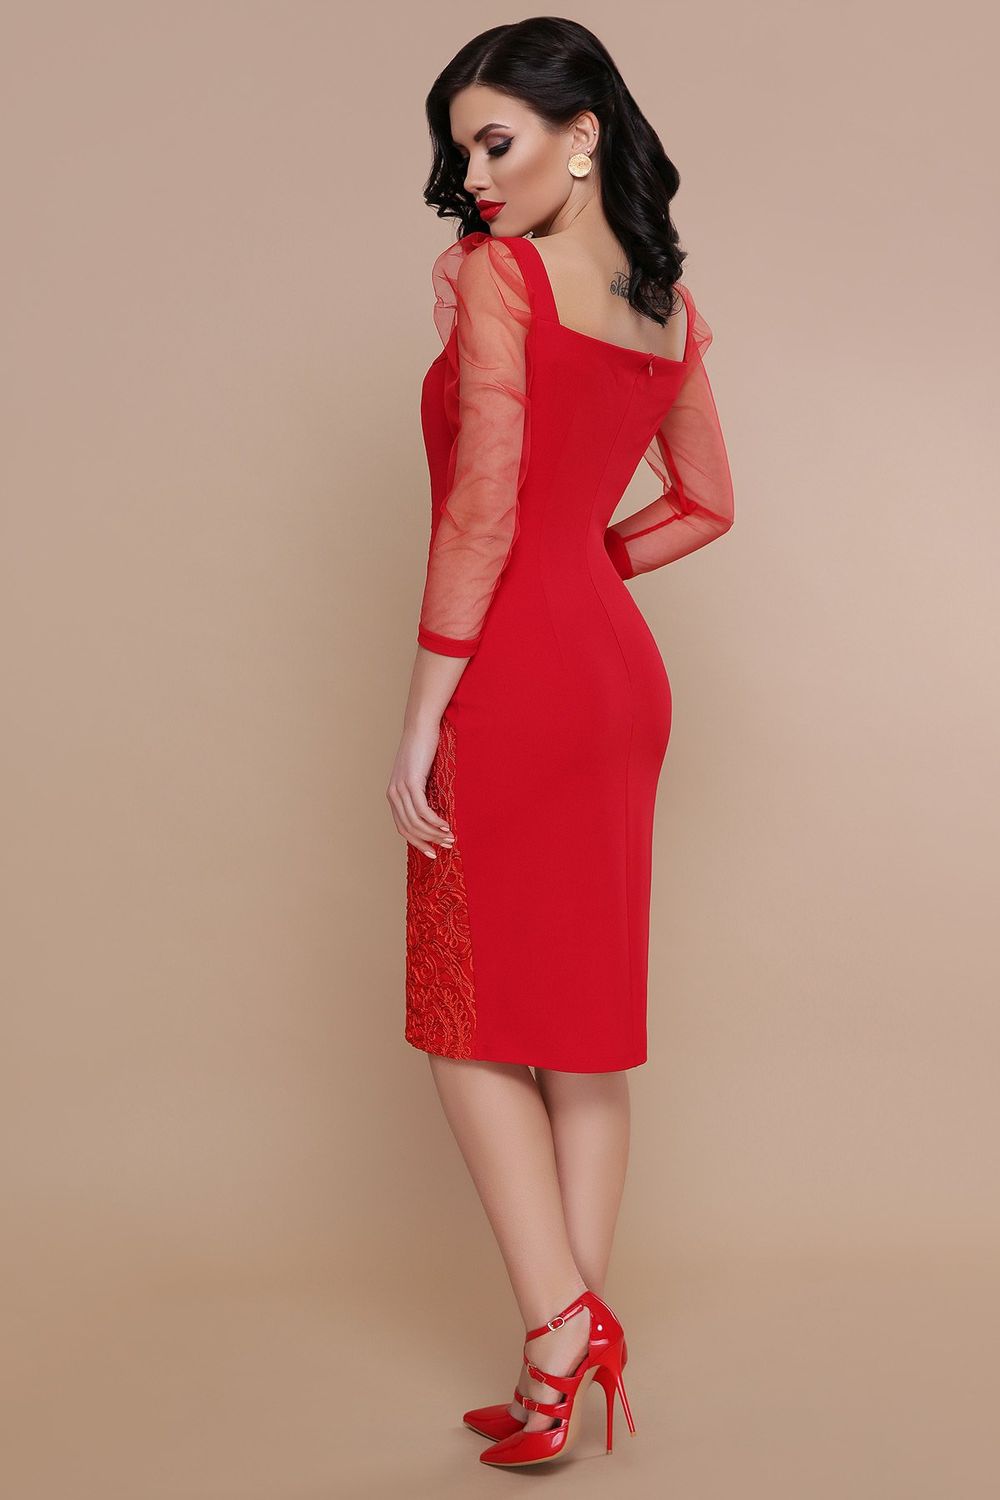 Коктейльное платье красное со вставками сетки - фото